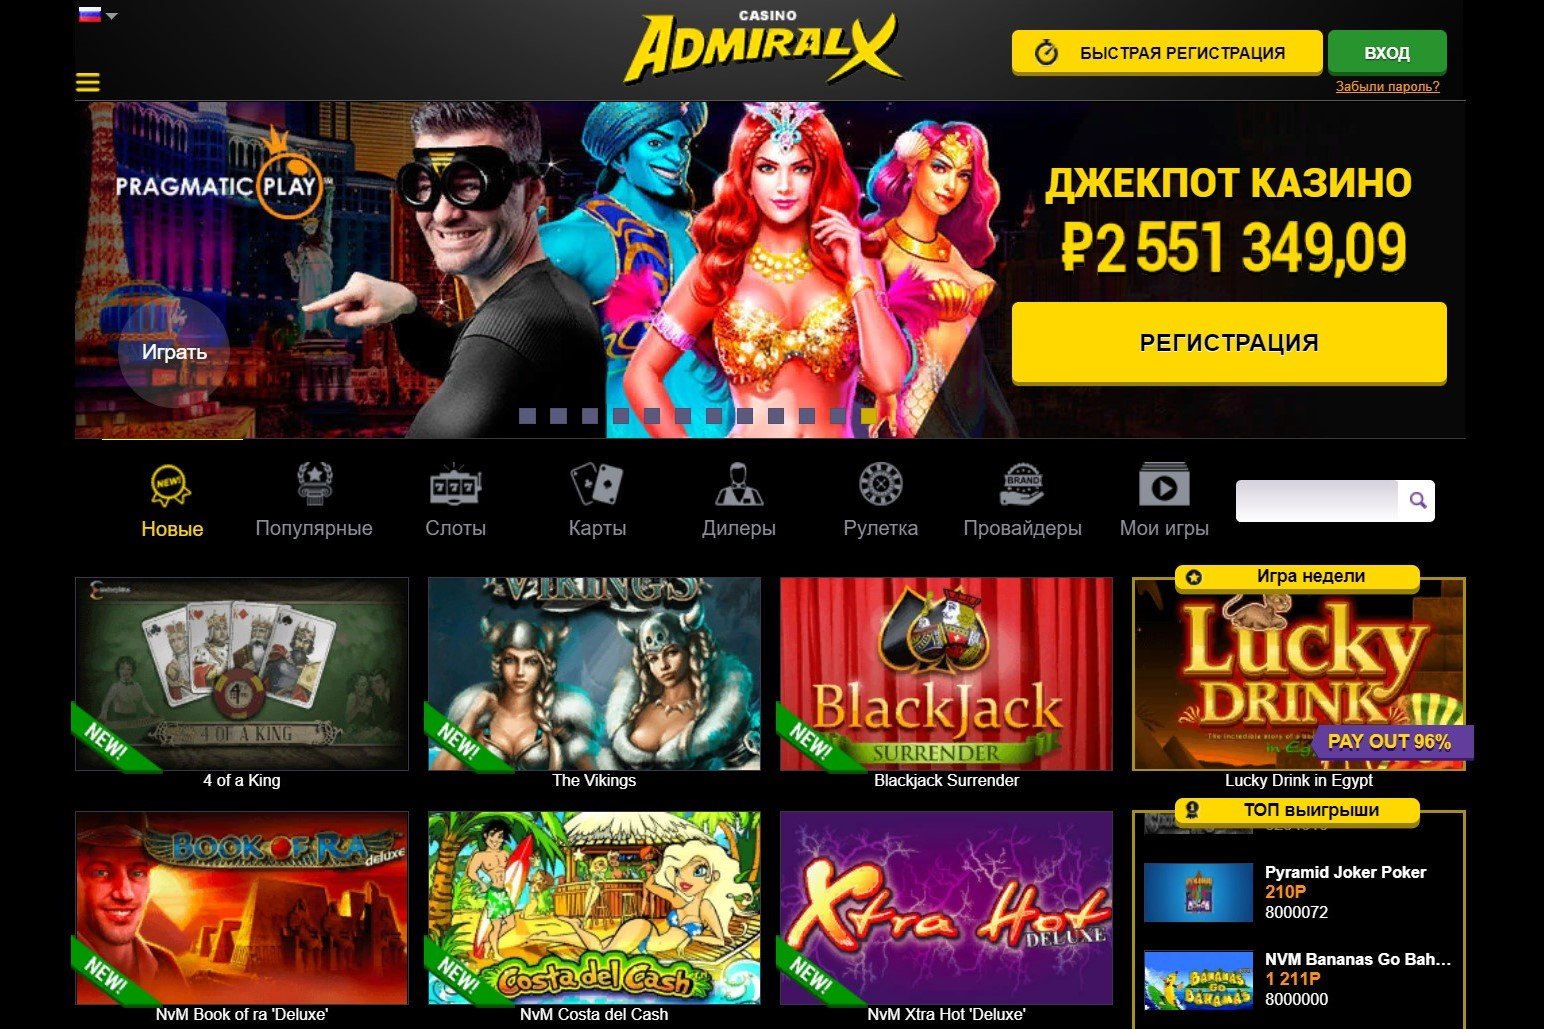 Онлайн казино admiral x зеркало порно онлайн видеочат рулетка